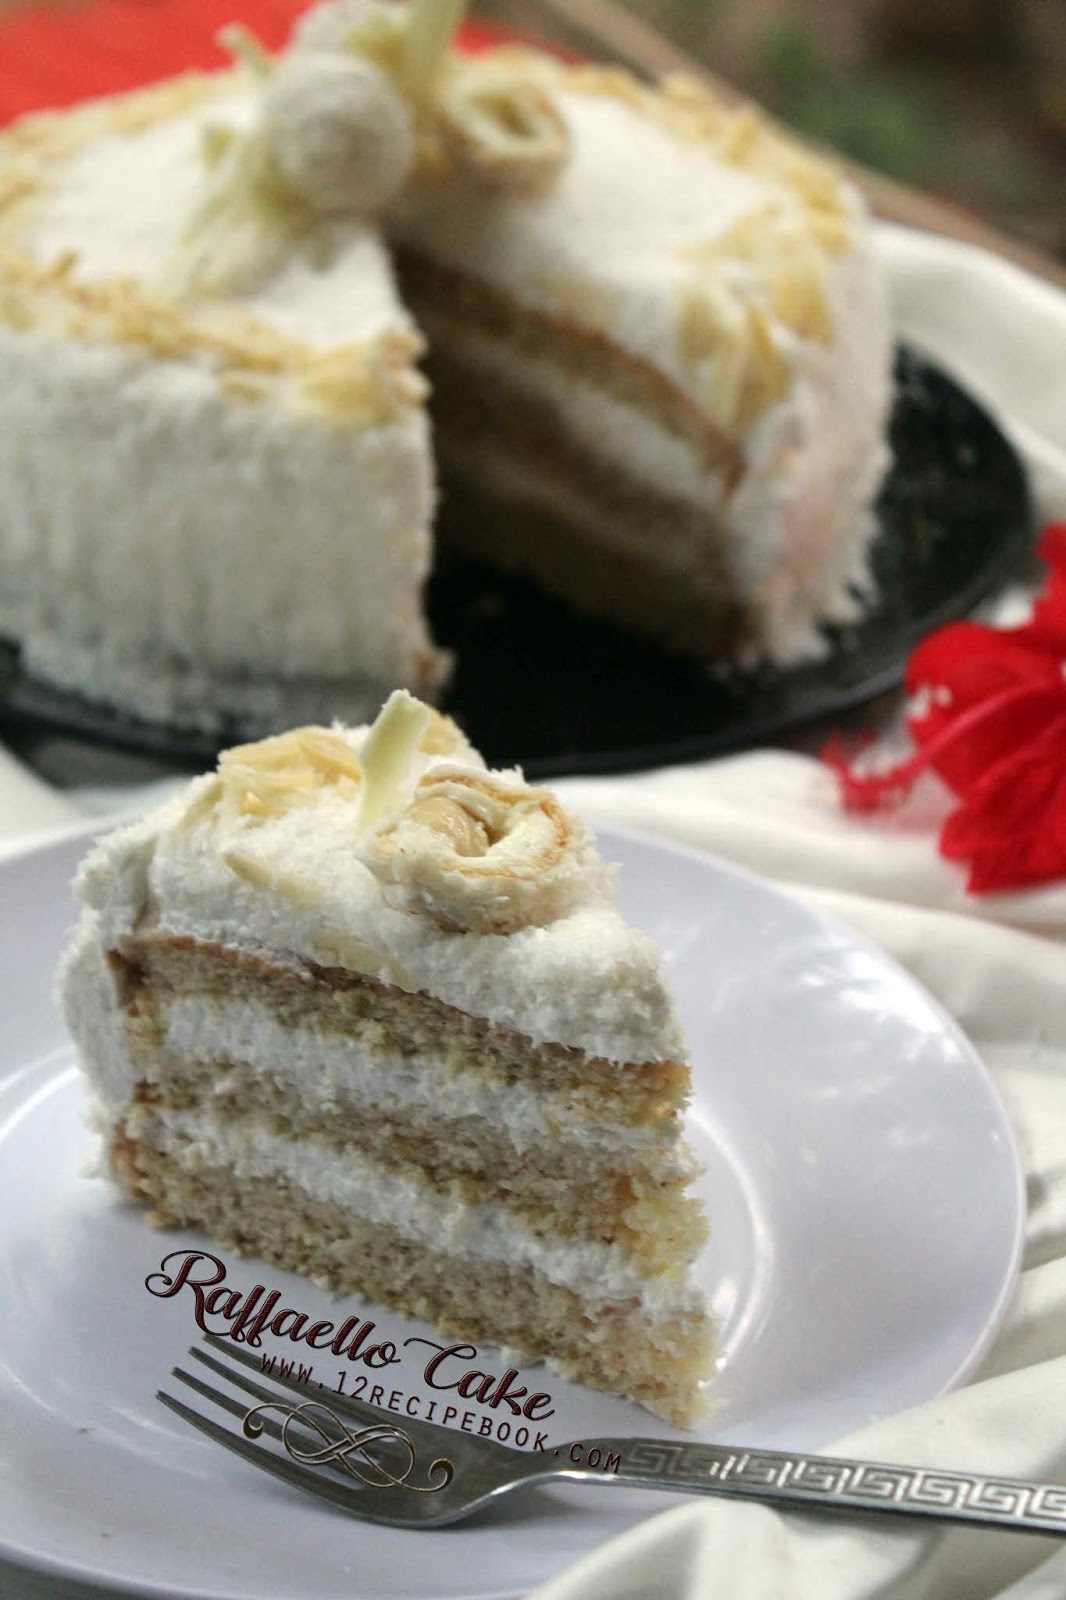 Raffaello Cake / Coconut Almond Cake - Recipe Book